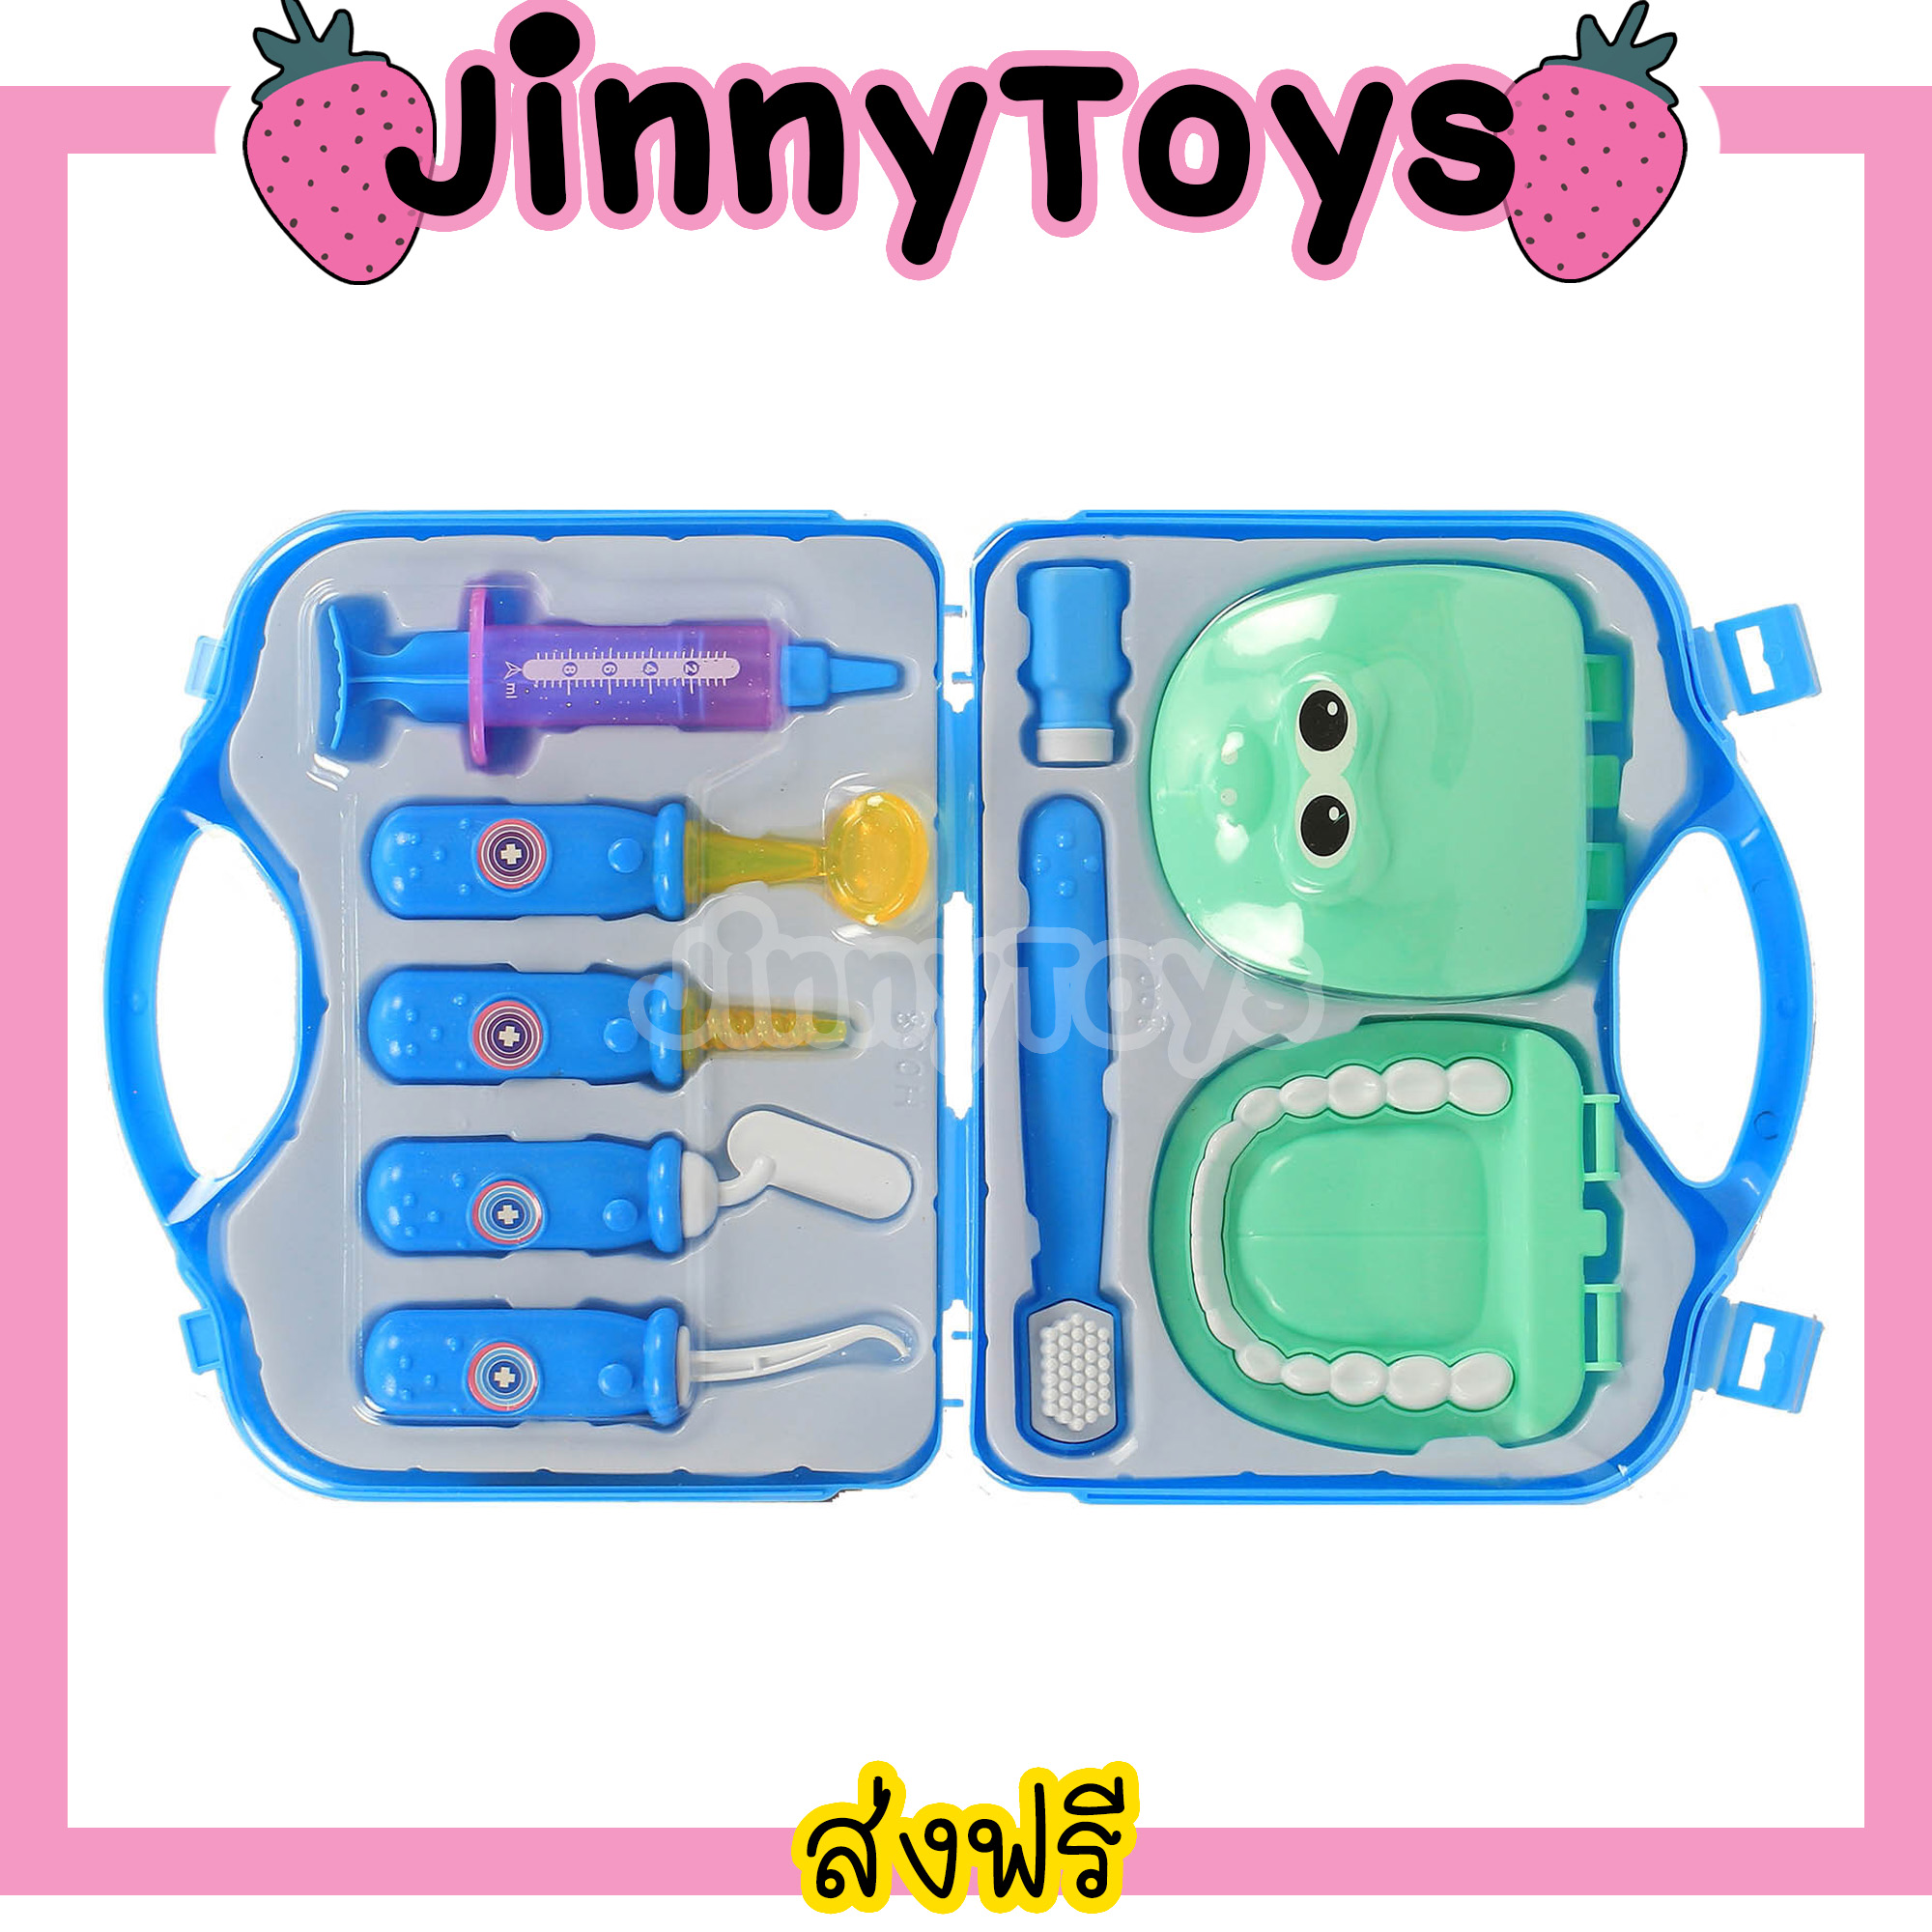 Jinny Toys ของเล่นเด็ก คุณหมอ ของเล่นหมอฟัน ฟันปลอมของเล่น สีฟ้า Doctor ของเล่นคุณหมอ ชุดของเล่นหมอ 3-5 ปี ของเล่นเป็นหมอ เซตของเล่นหมอ ของเล่นหมอเด็ก เซ็ตของเล่นหมอ เซ็ตของเล่นหมอฟัน หมอฟันจำลอง ของเล่นครอบครัว ชุดคุณหมอจำลอง ของเล่นบทบาทสมมติ